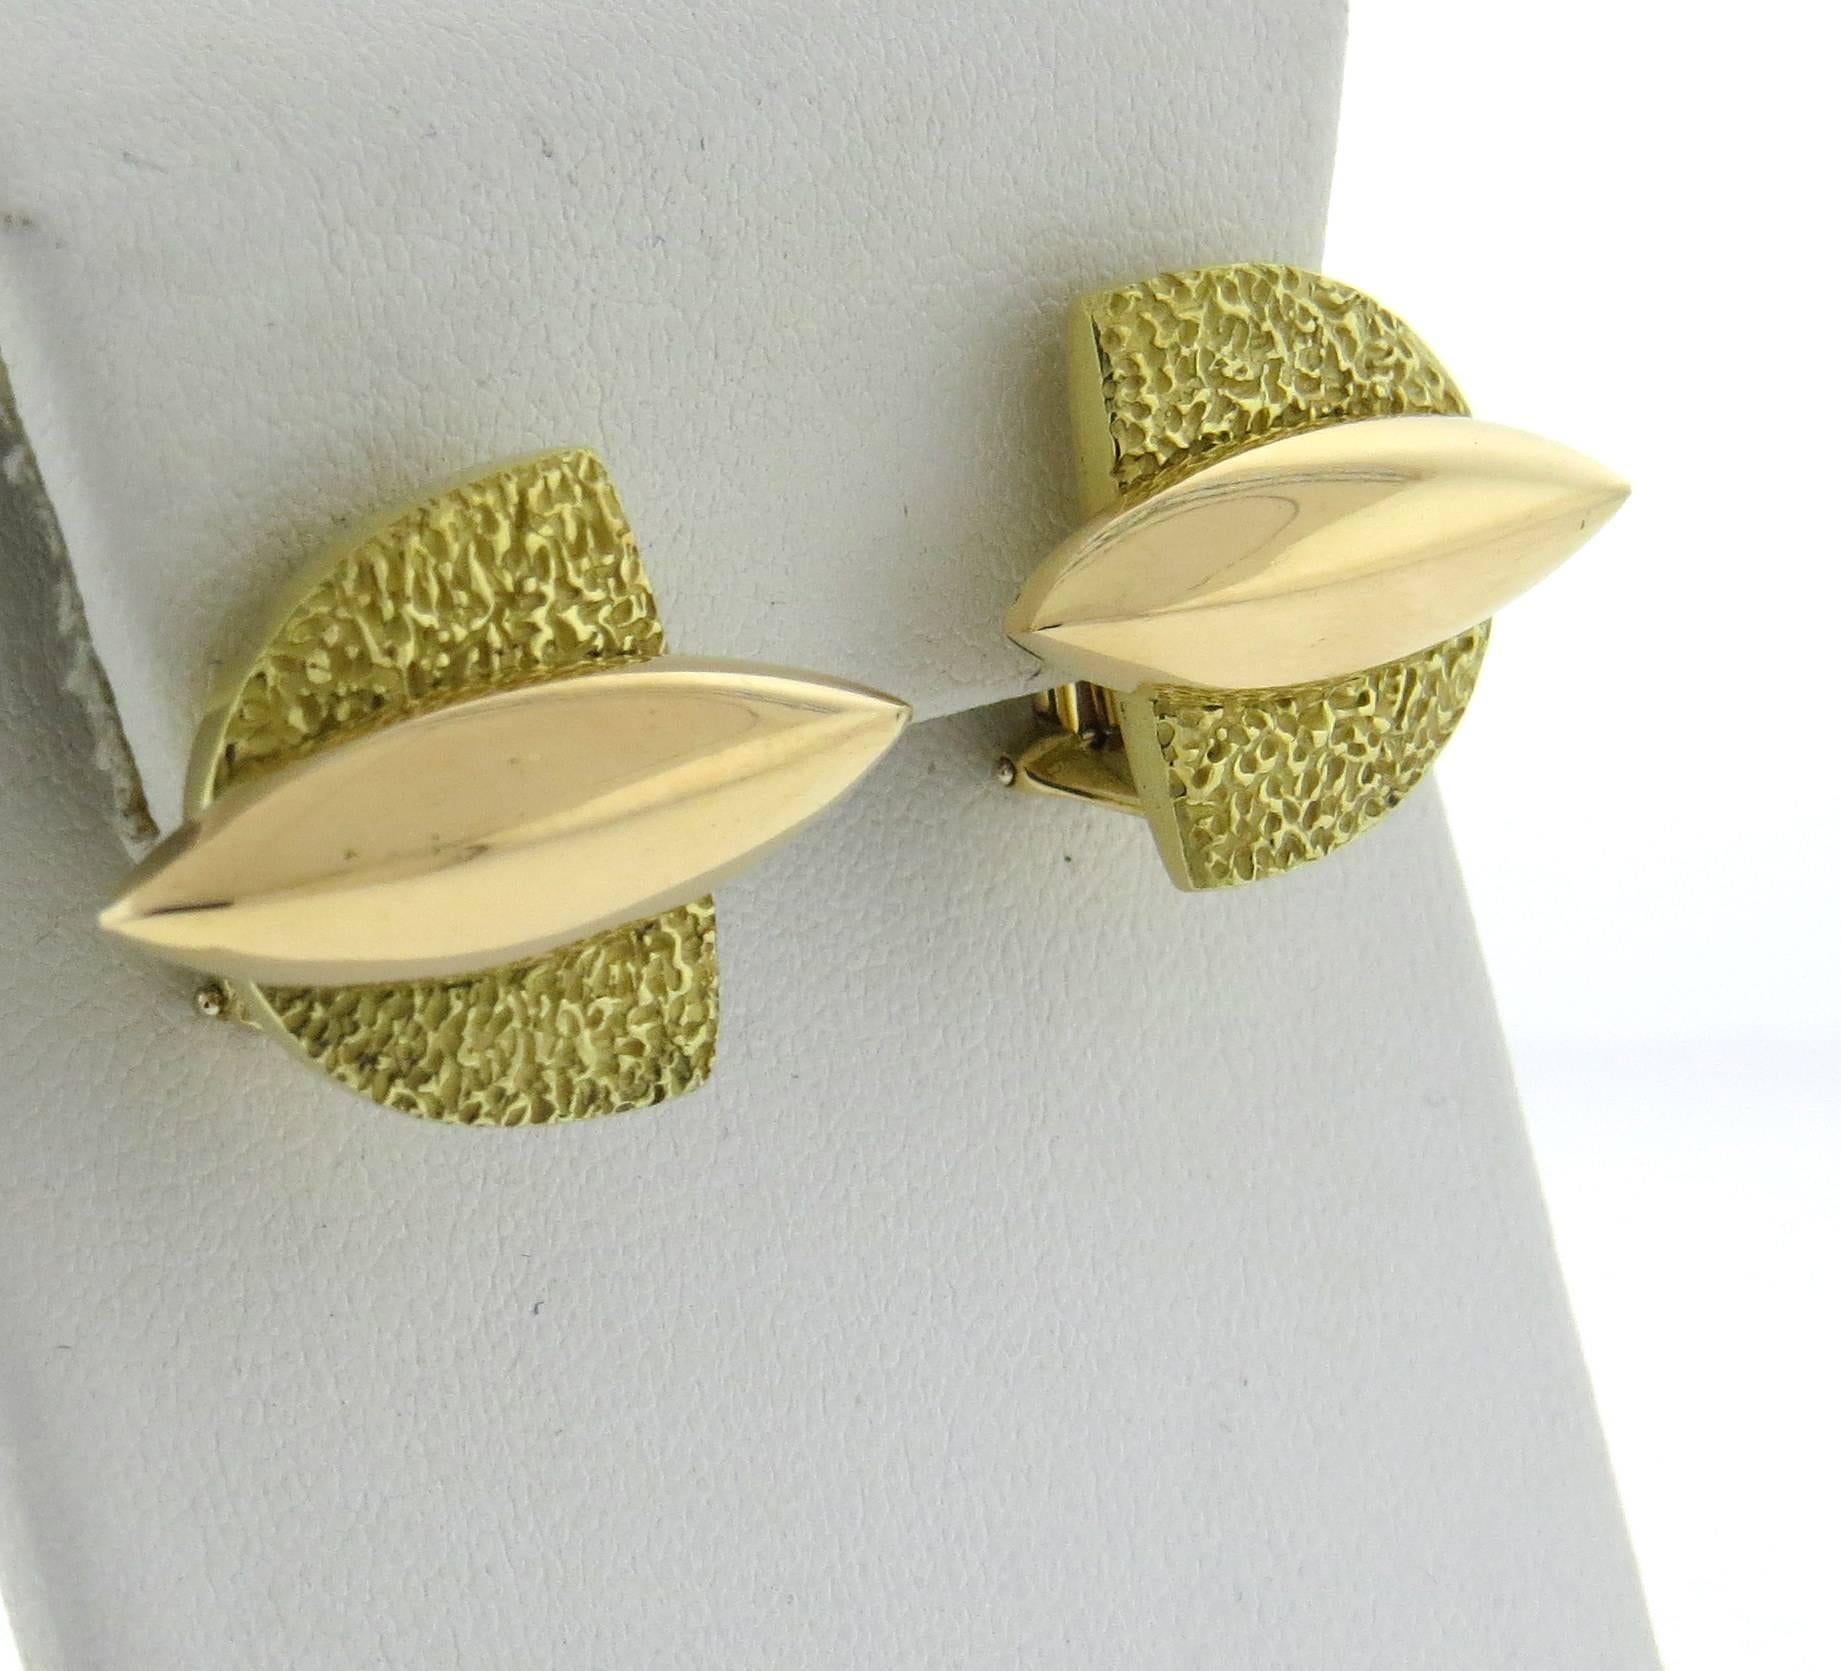 Ein Paar Ohrringe aus 18 Karat Gelb- und Roségold, gefertigt von Giorgio Facchini. Die Ohrringe messen 19 mm x 25 mm. Gekennzeichnet mit der Signatur Facchini, 750.  Gewicht - 23,3 Gramm 